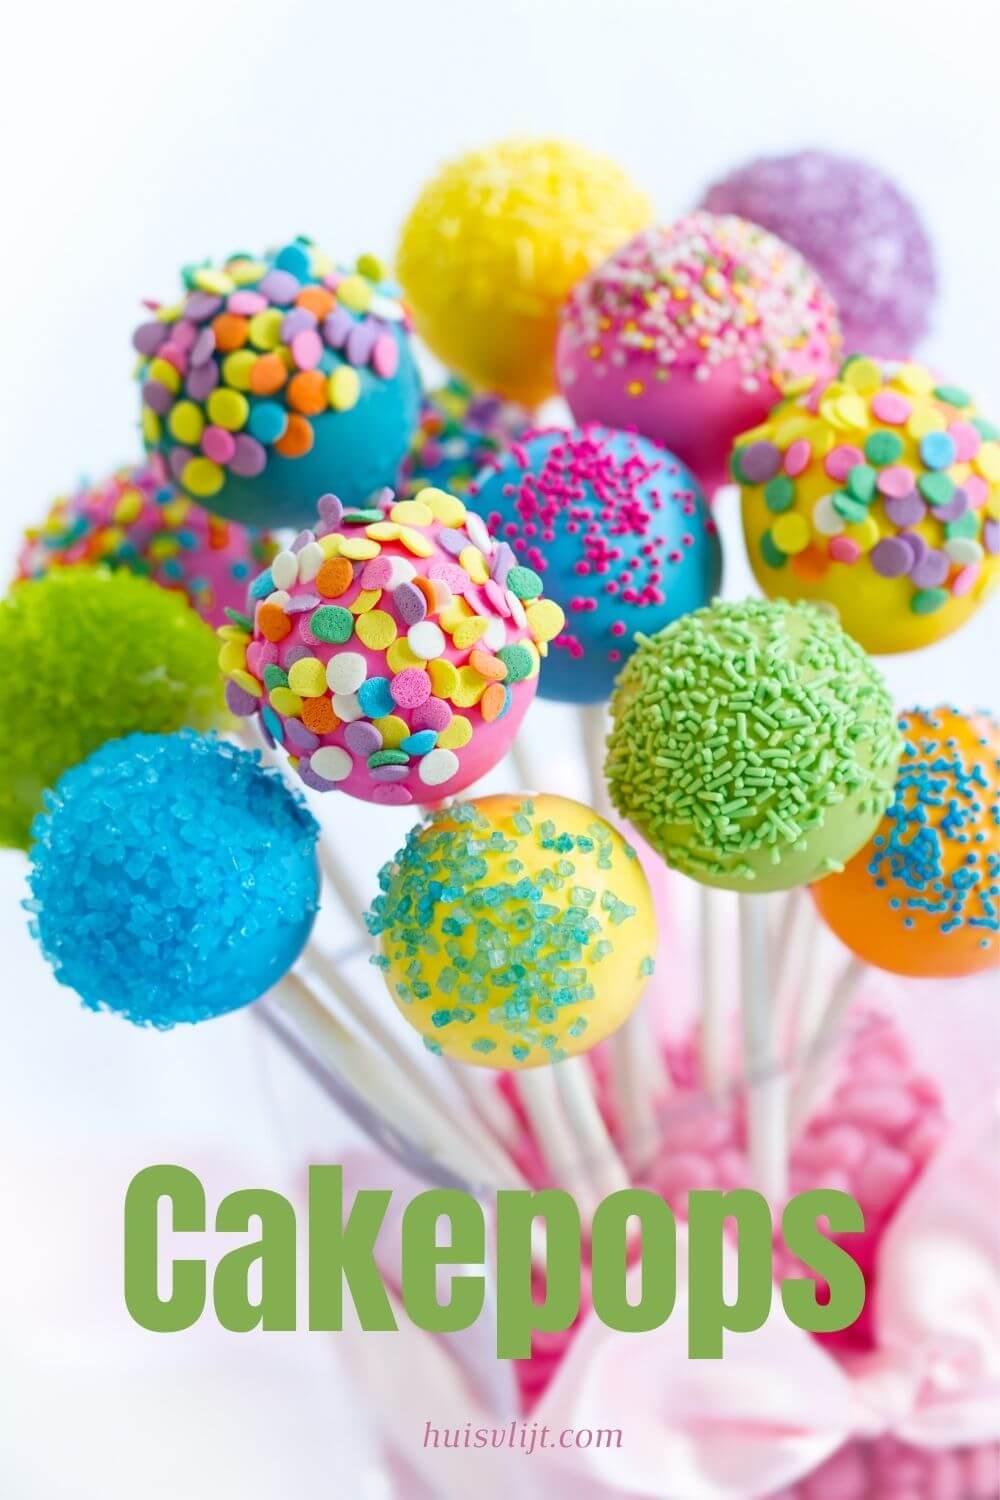 Cakepops of Popcakes: meer dan cake op een stokje!